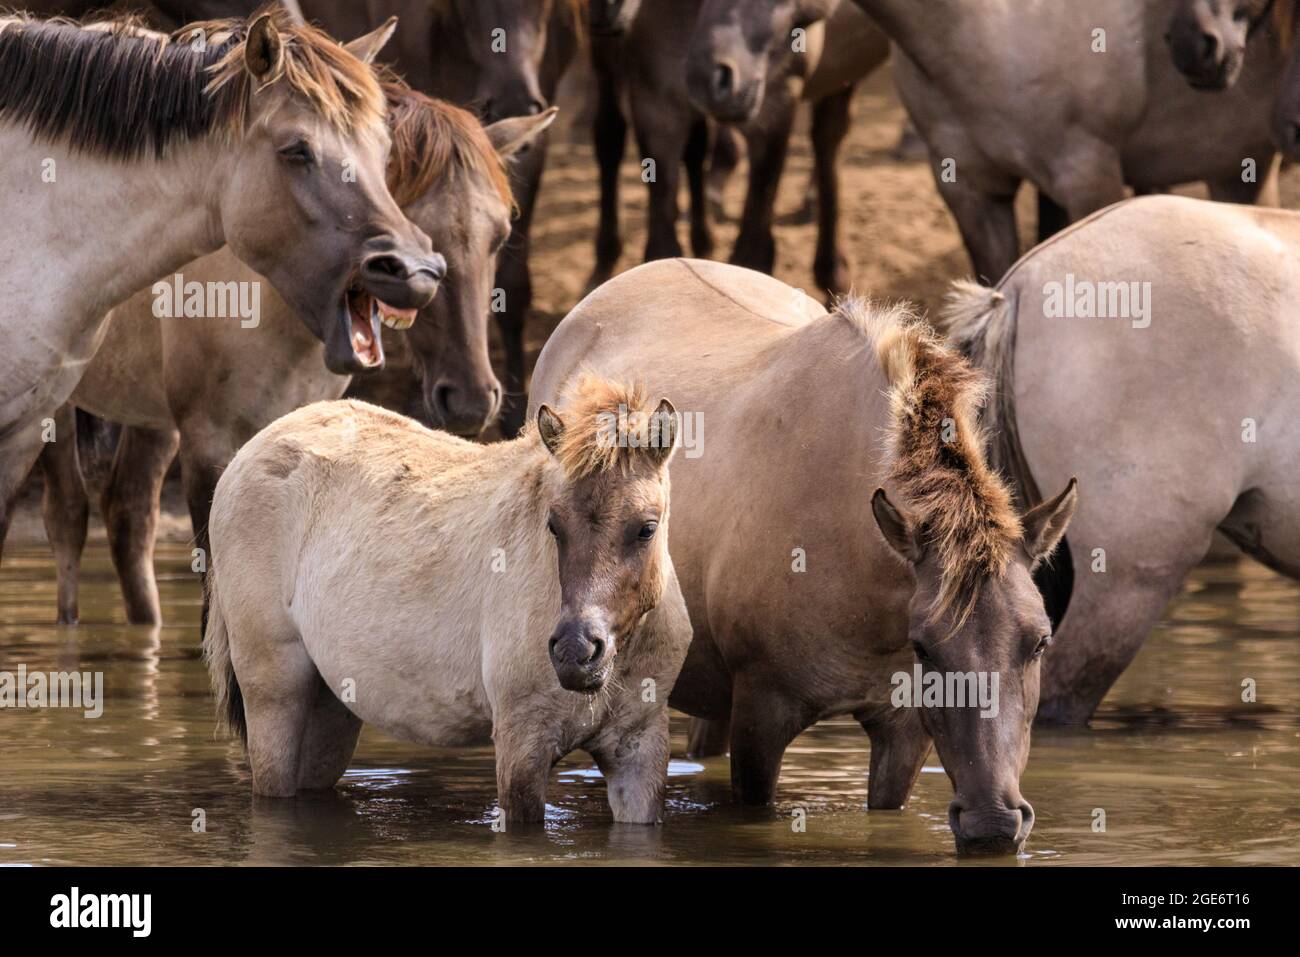 Les chevaux de baignade, les poneys sauvages de Dülmen (également appelés les Dülmener ou les Duelmen), race semi-sauvage, Muensterland, Allemagne Banque D'Images